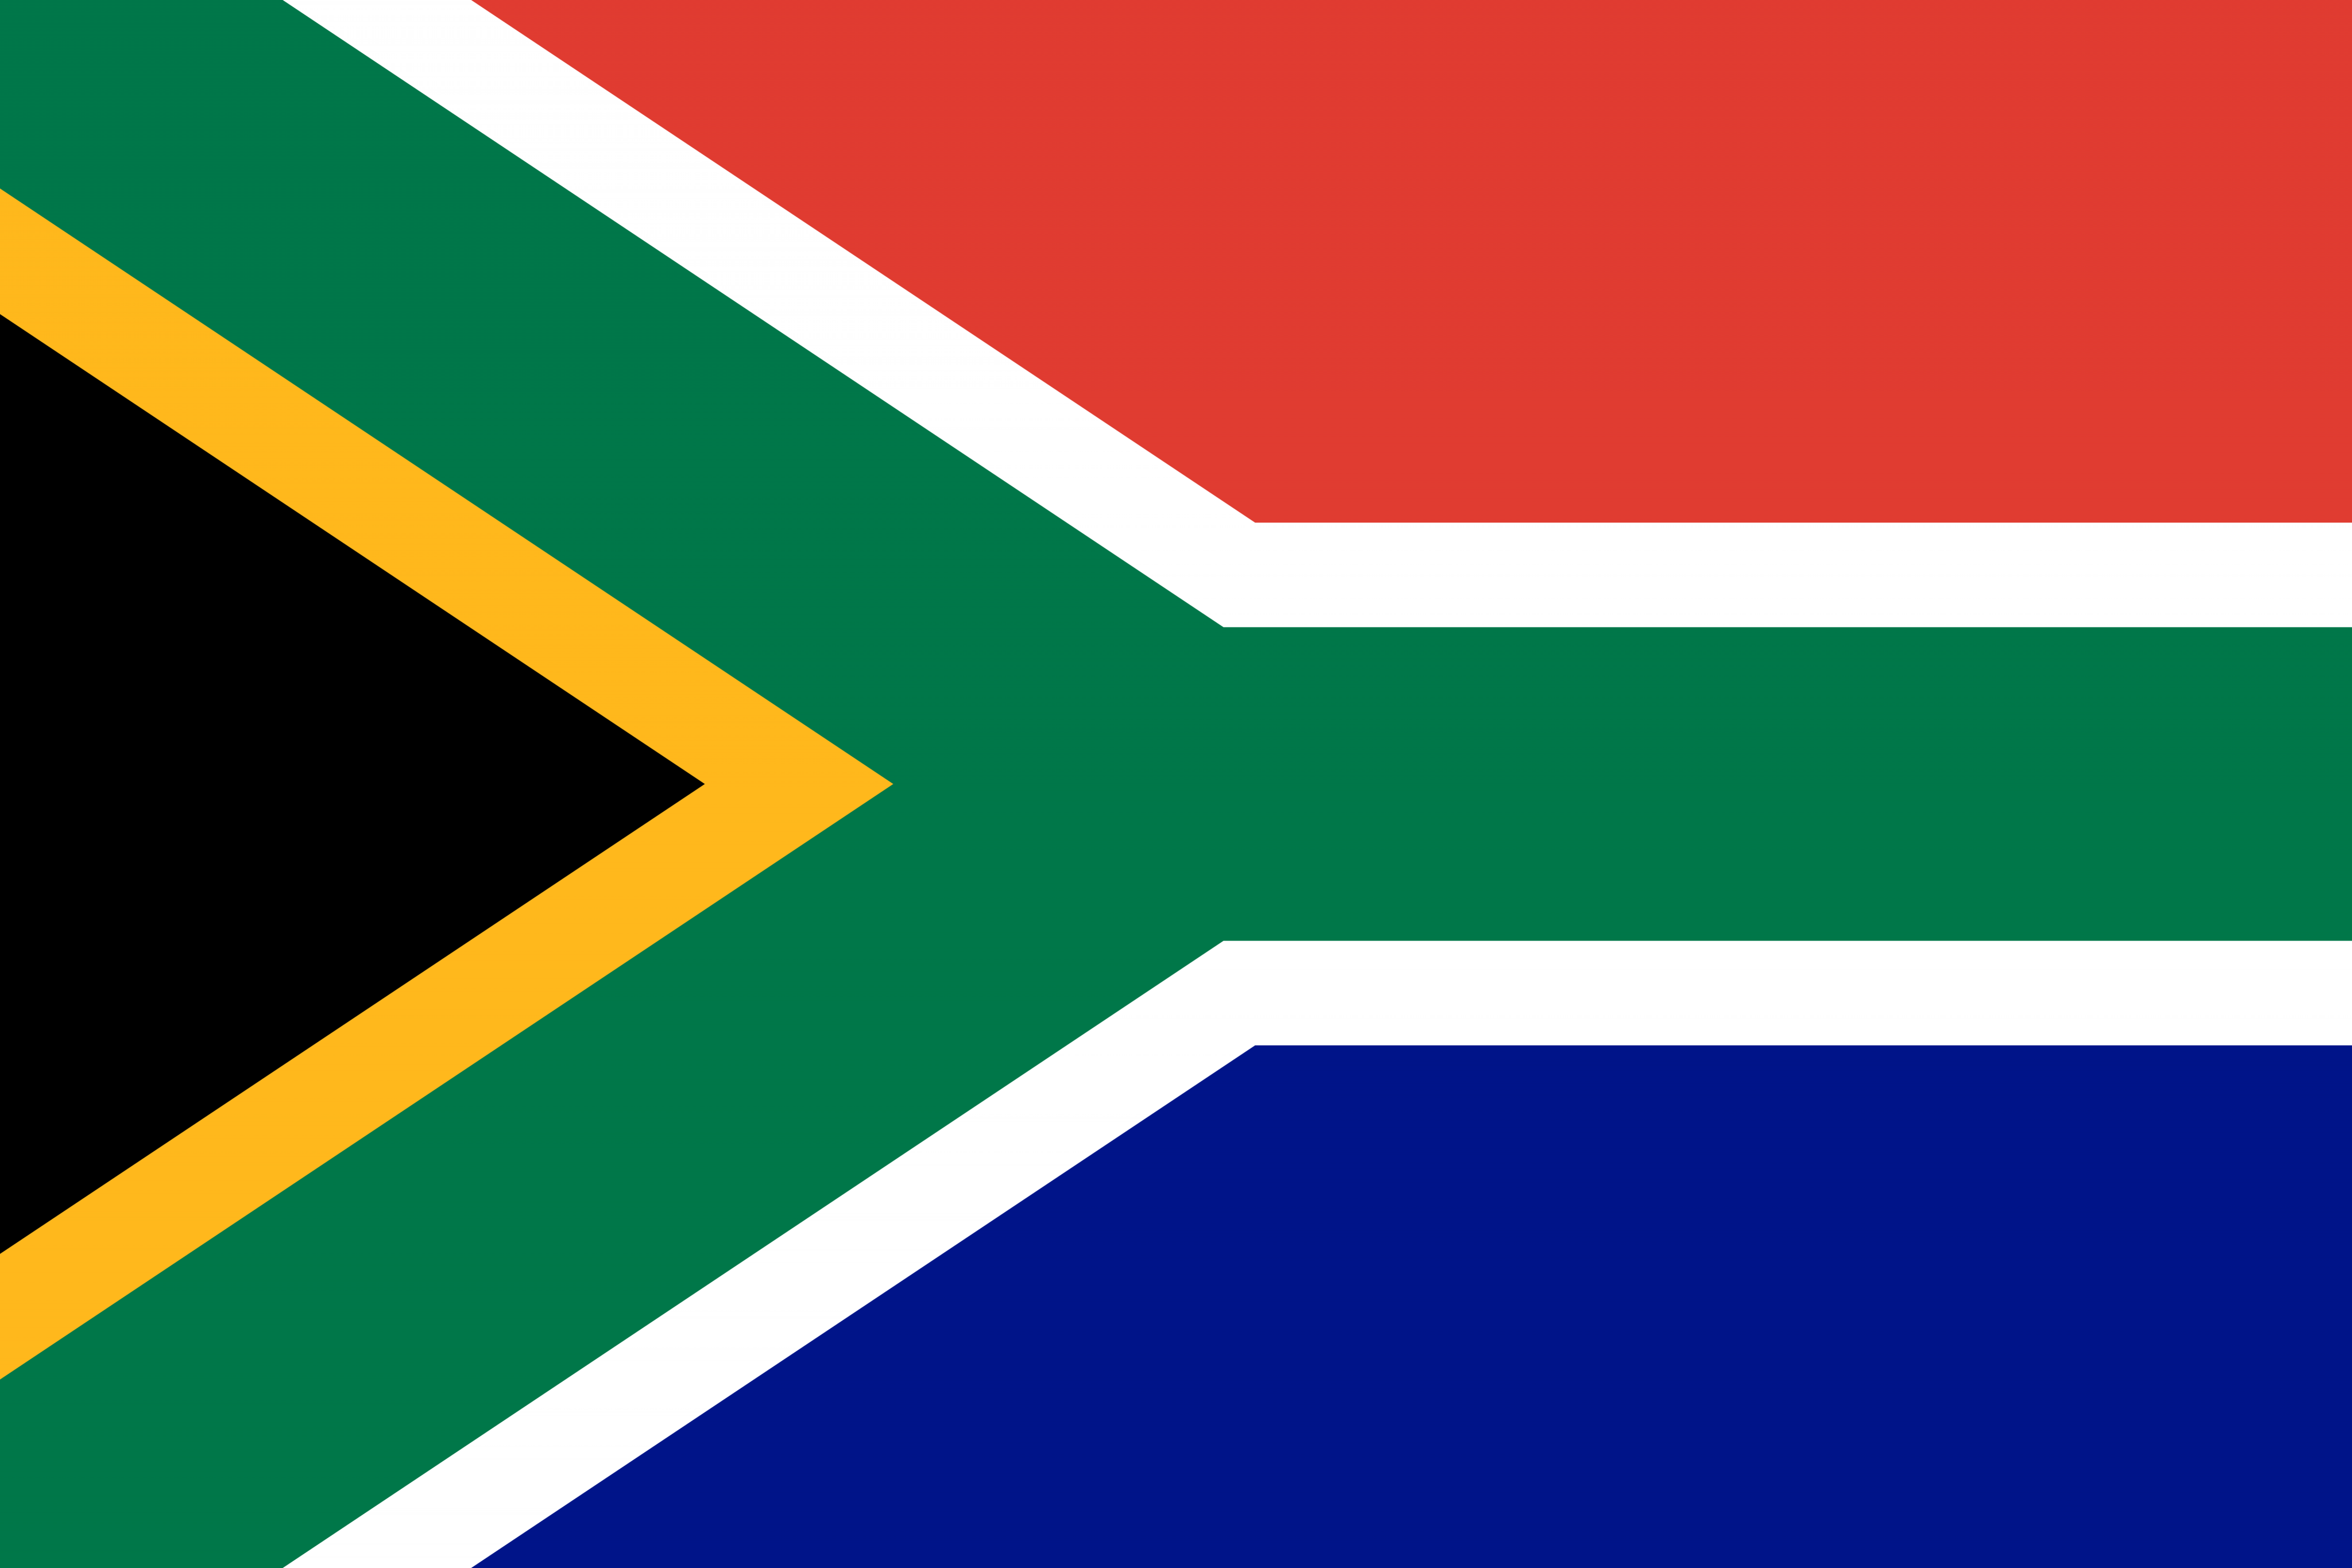 پرچم کشور آفریقای جنوبی